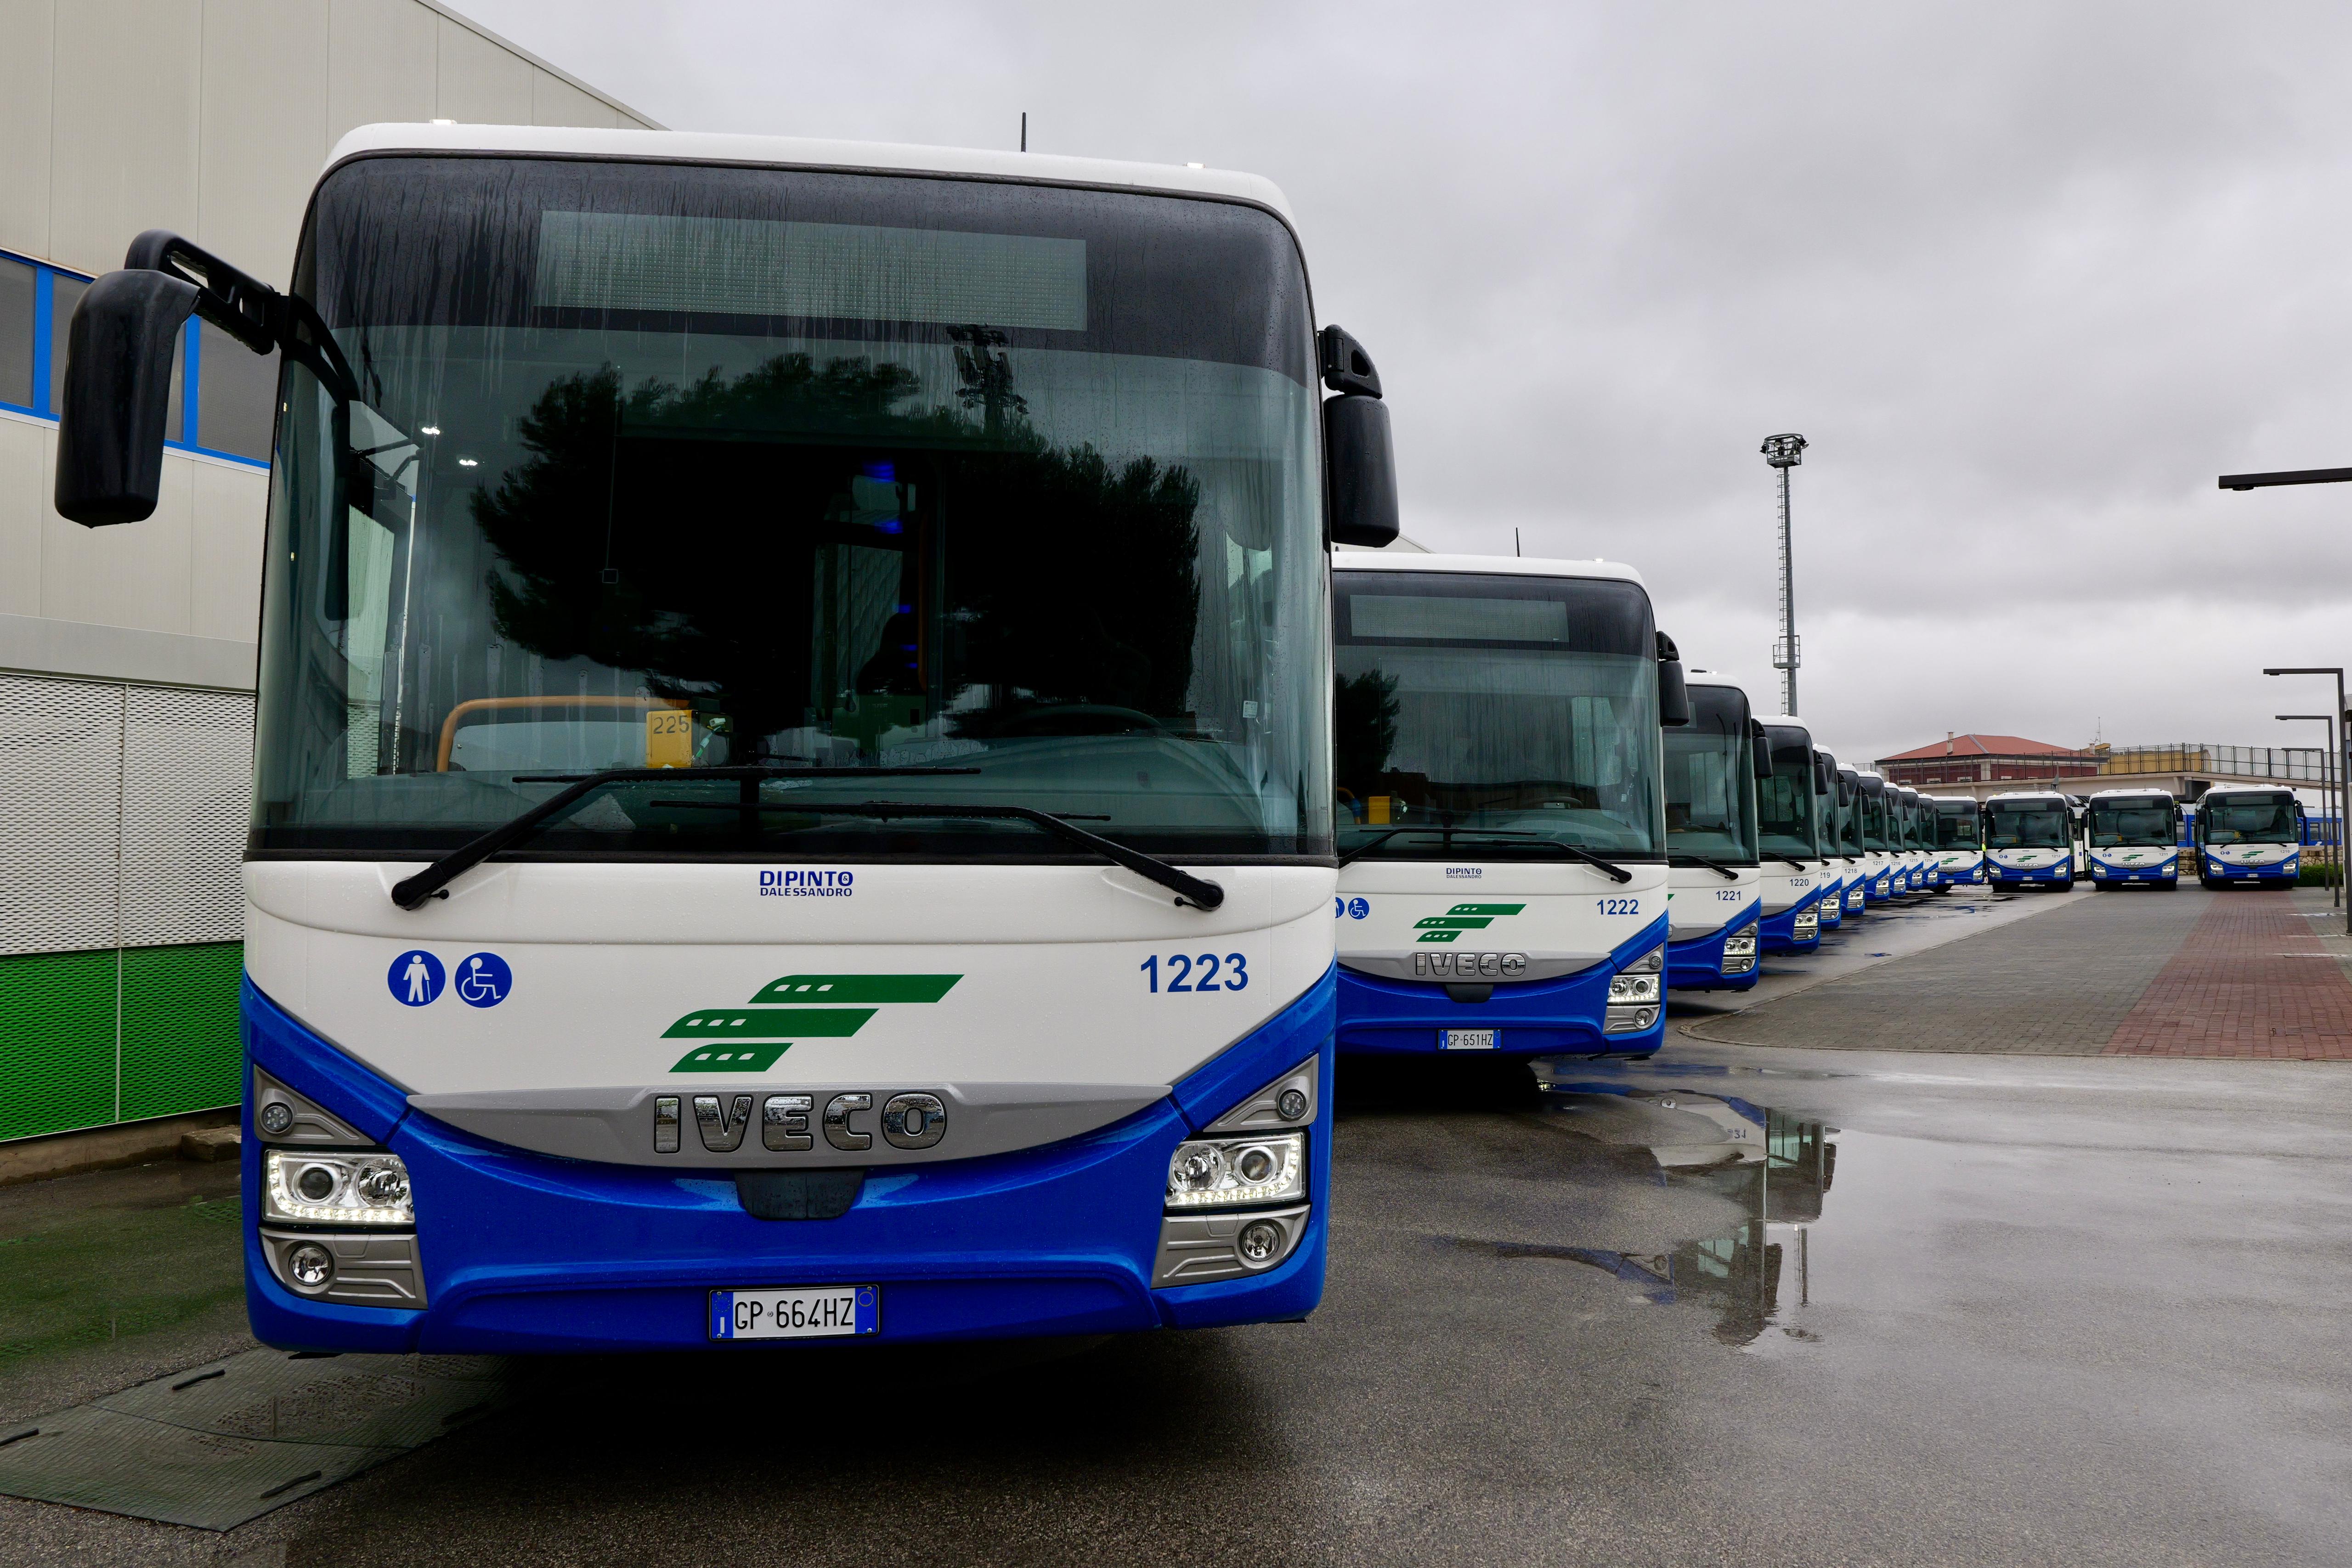 Galleria Trasporti, inaugurati 15 nuovi autobus FAL: l’azienda ha completato il rinnovo del parco mezzi pugliese, tra i più giovani d’Italia - Diapositiva 10 di 13